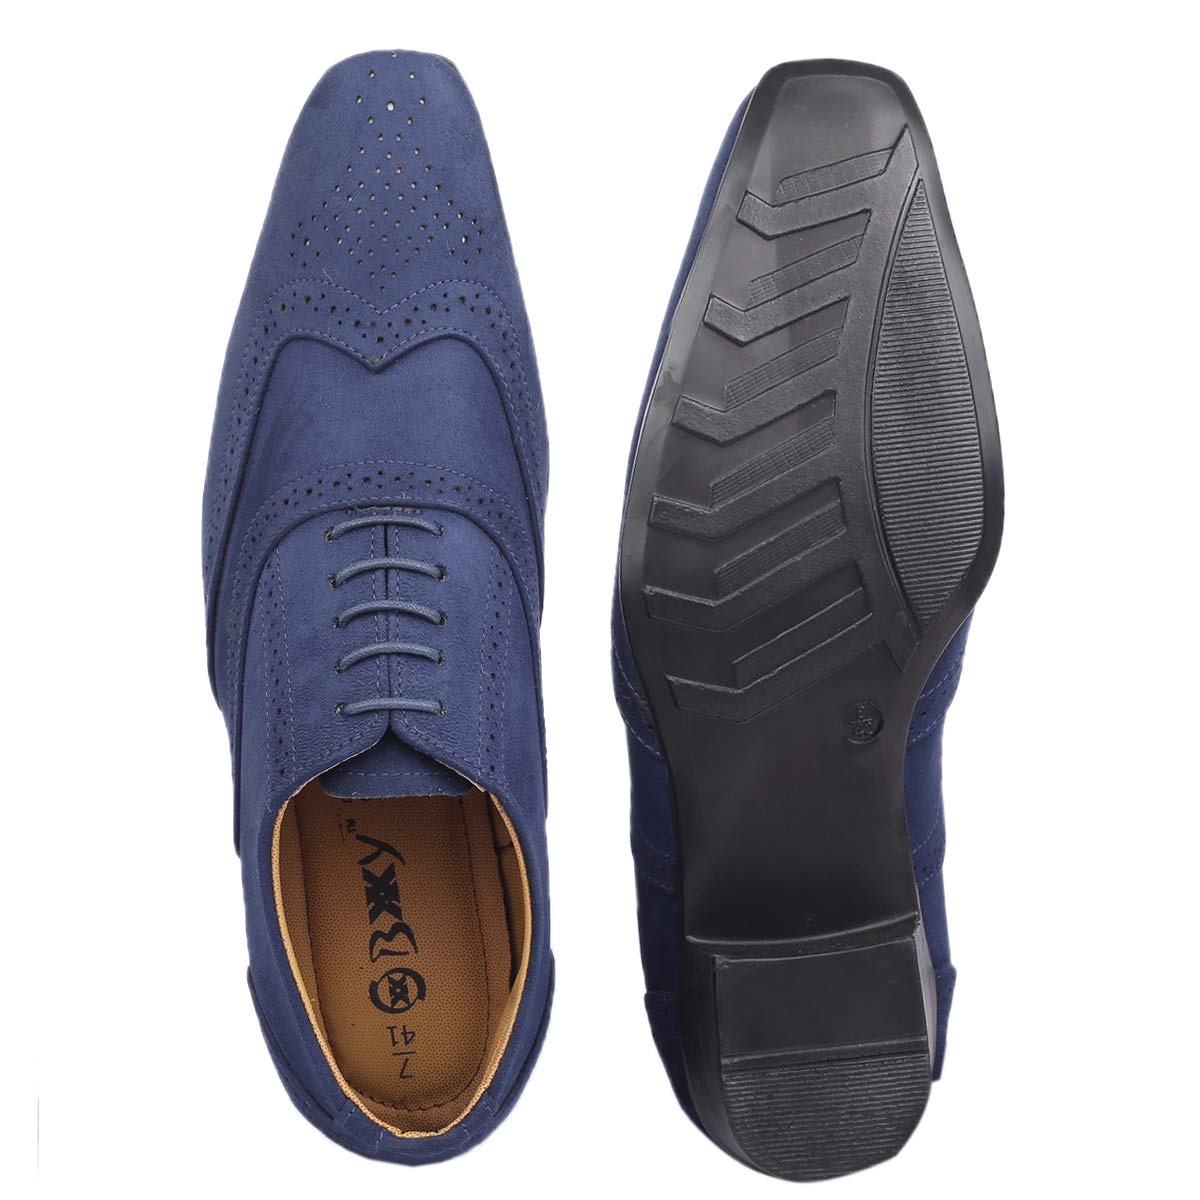 Blue Suede Brogue Oxford Shoes BX